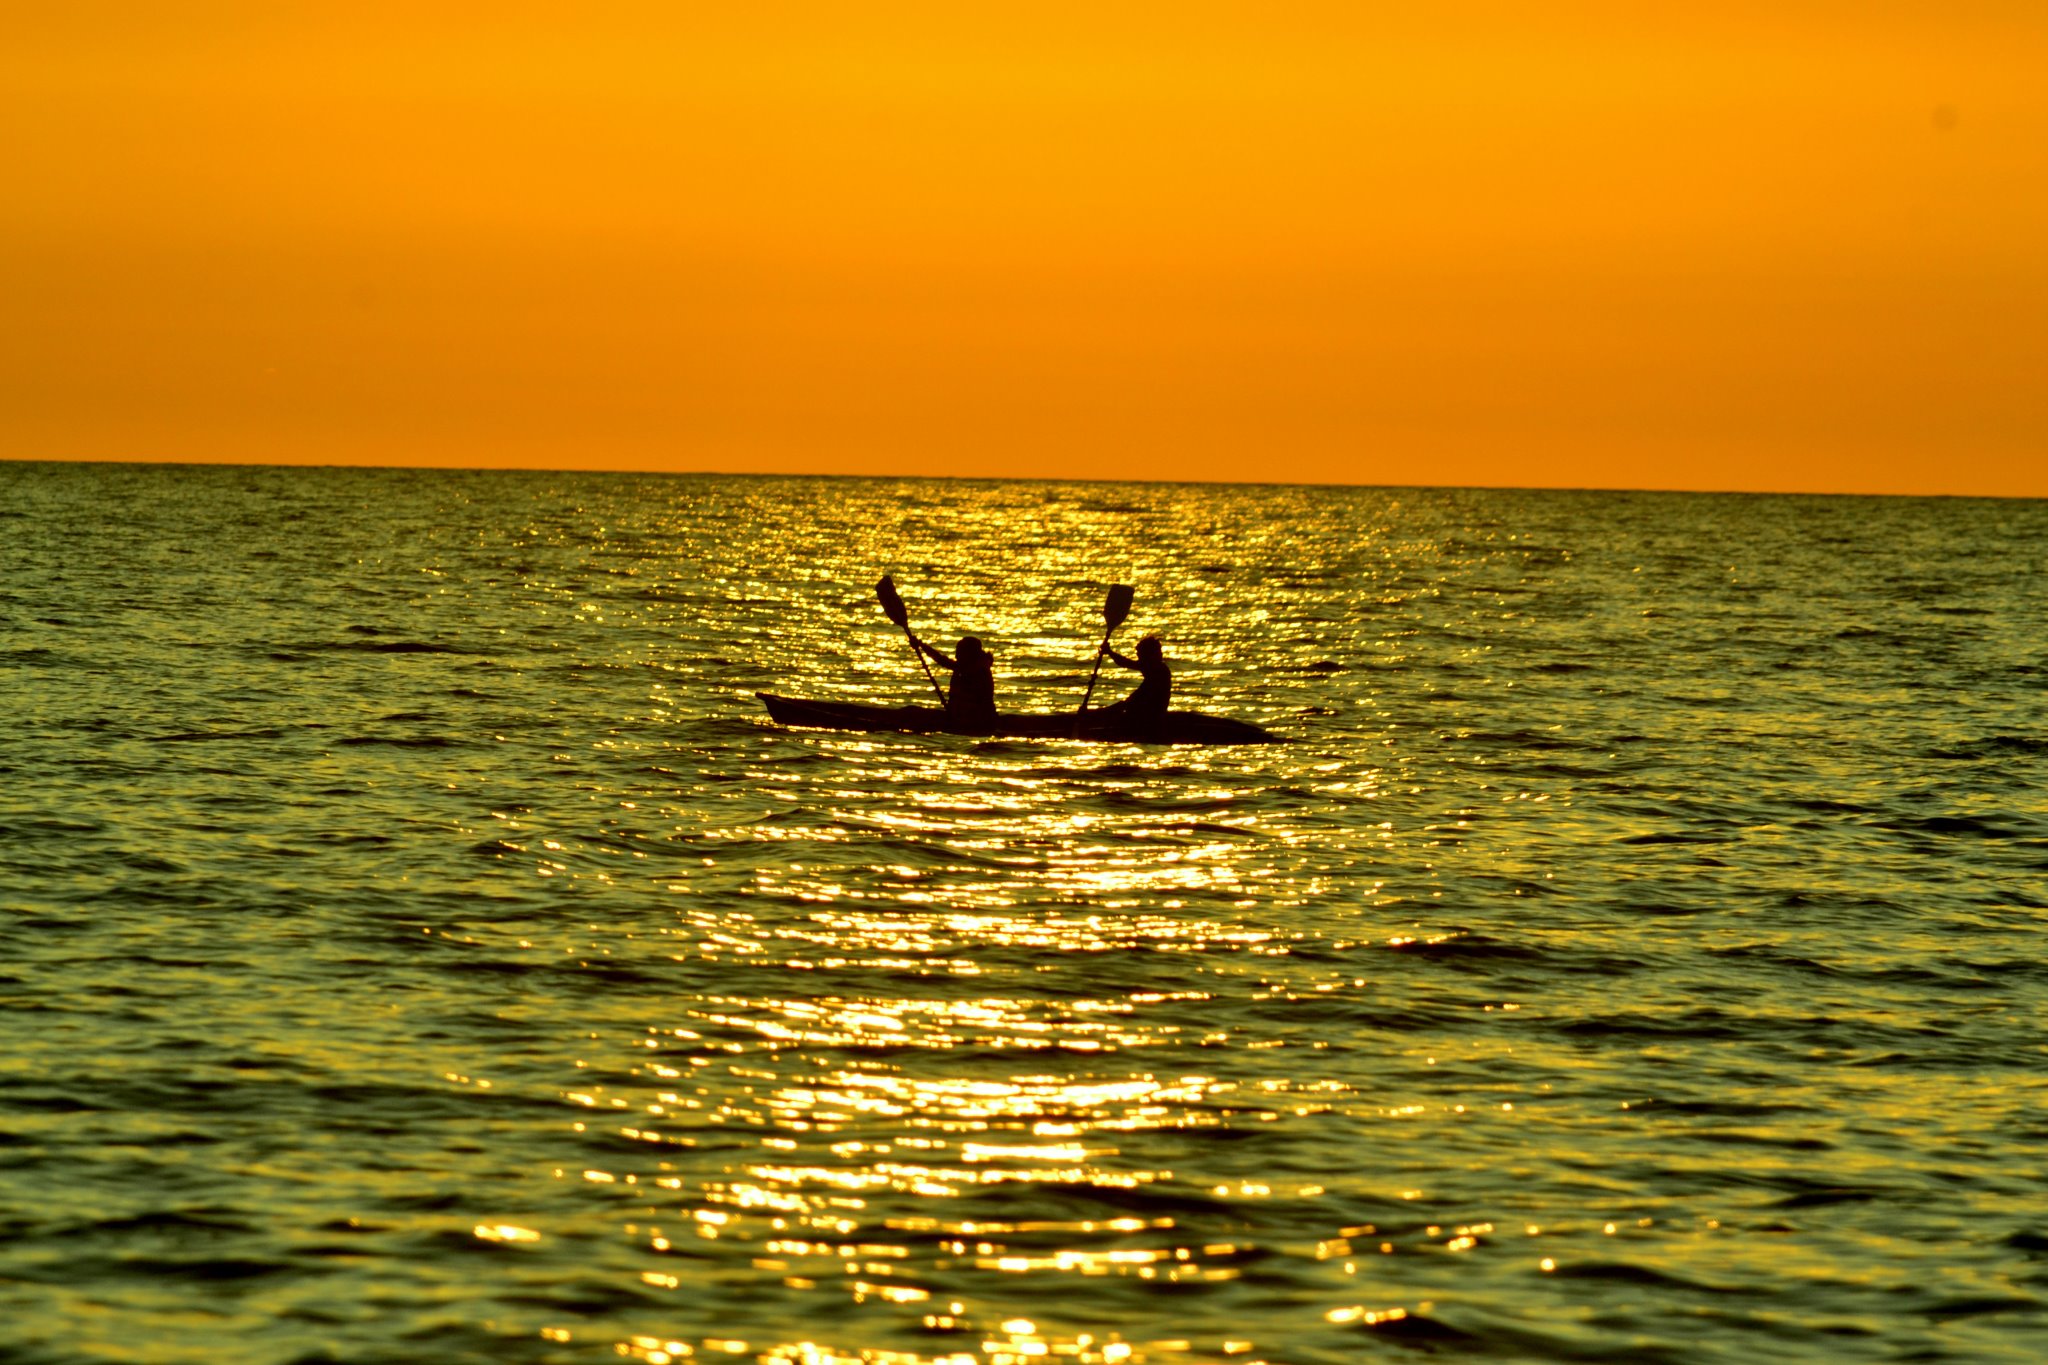 Kayaking into the sunset-Palolem(Goa-India)